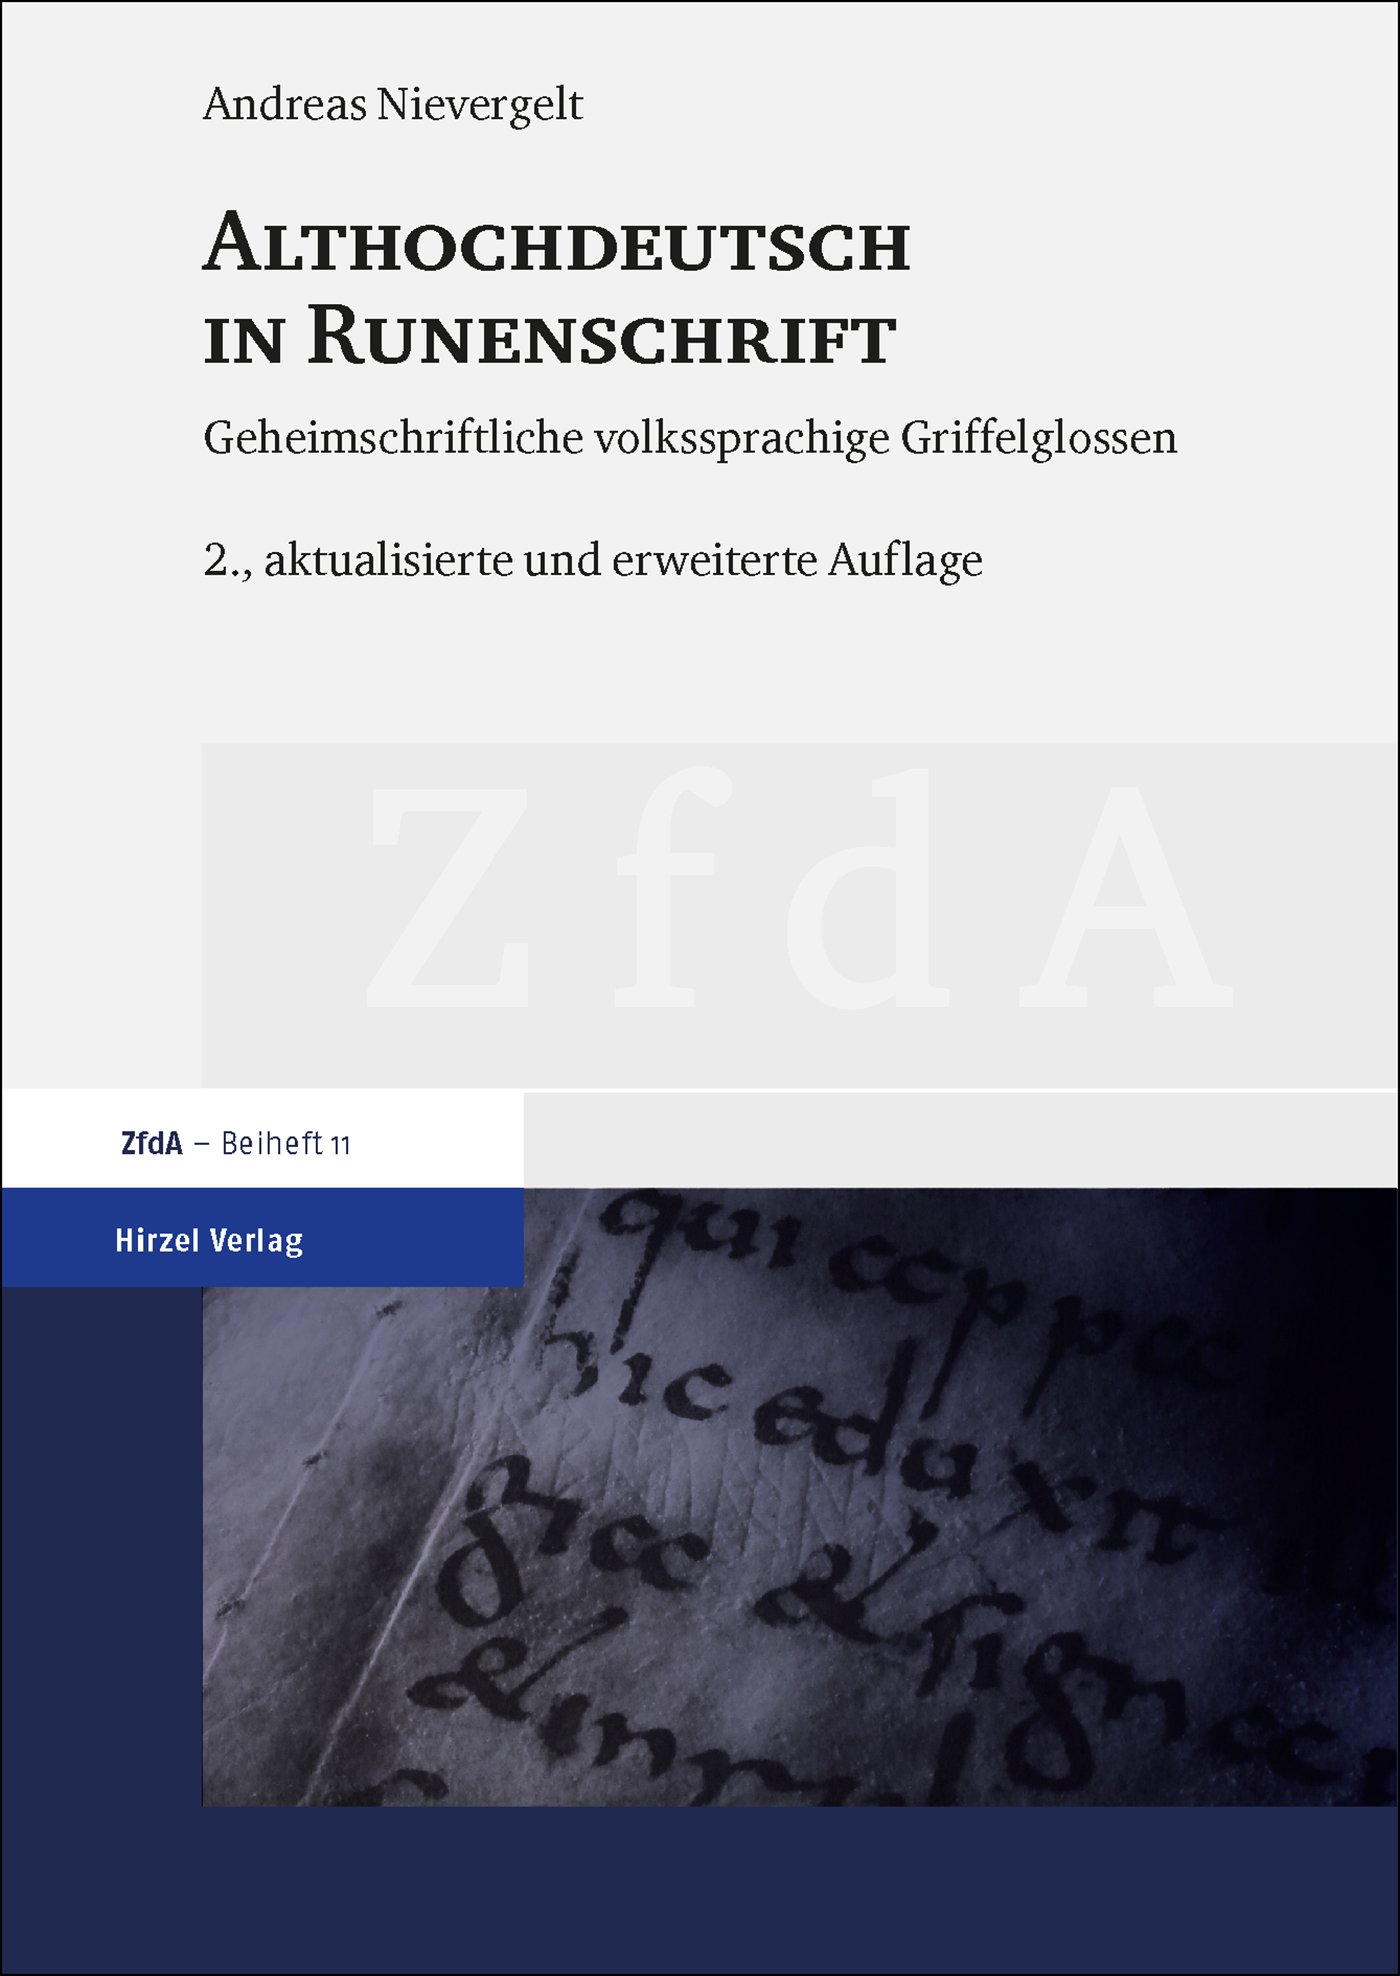 Althochdeutsch in Runenschrift